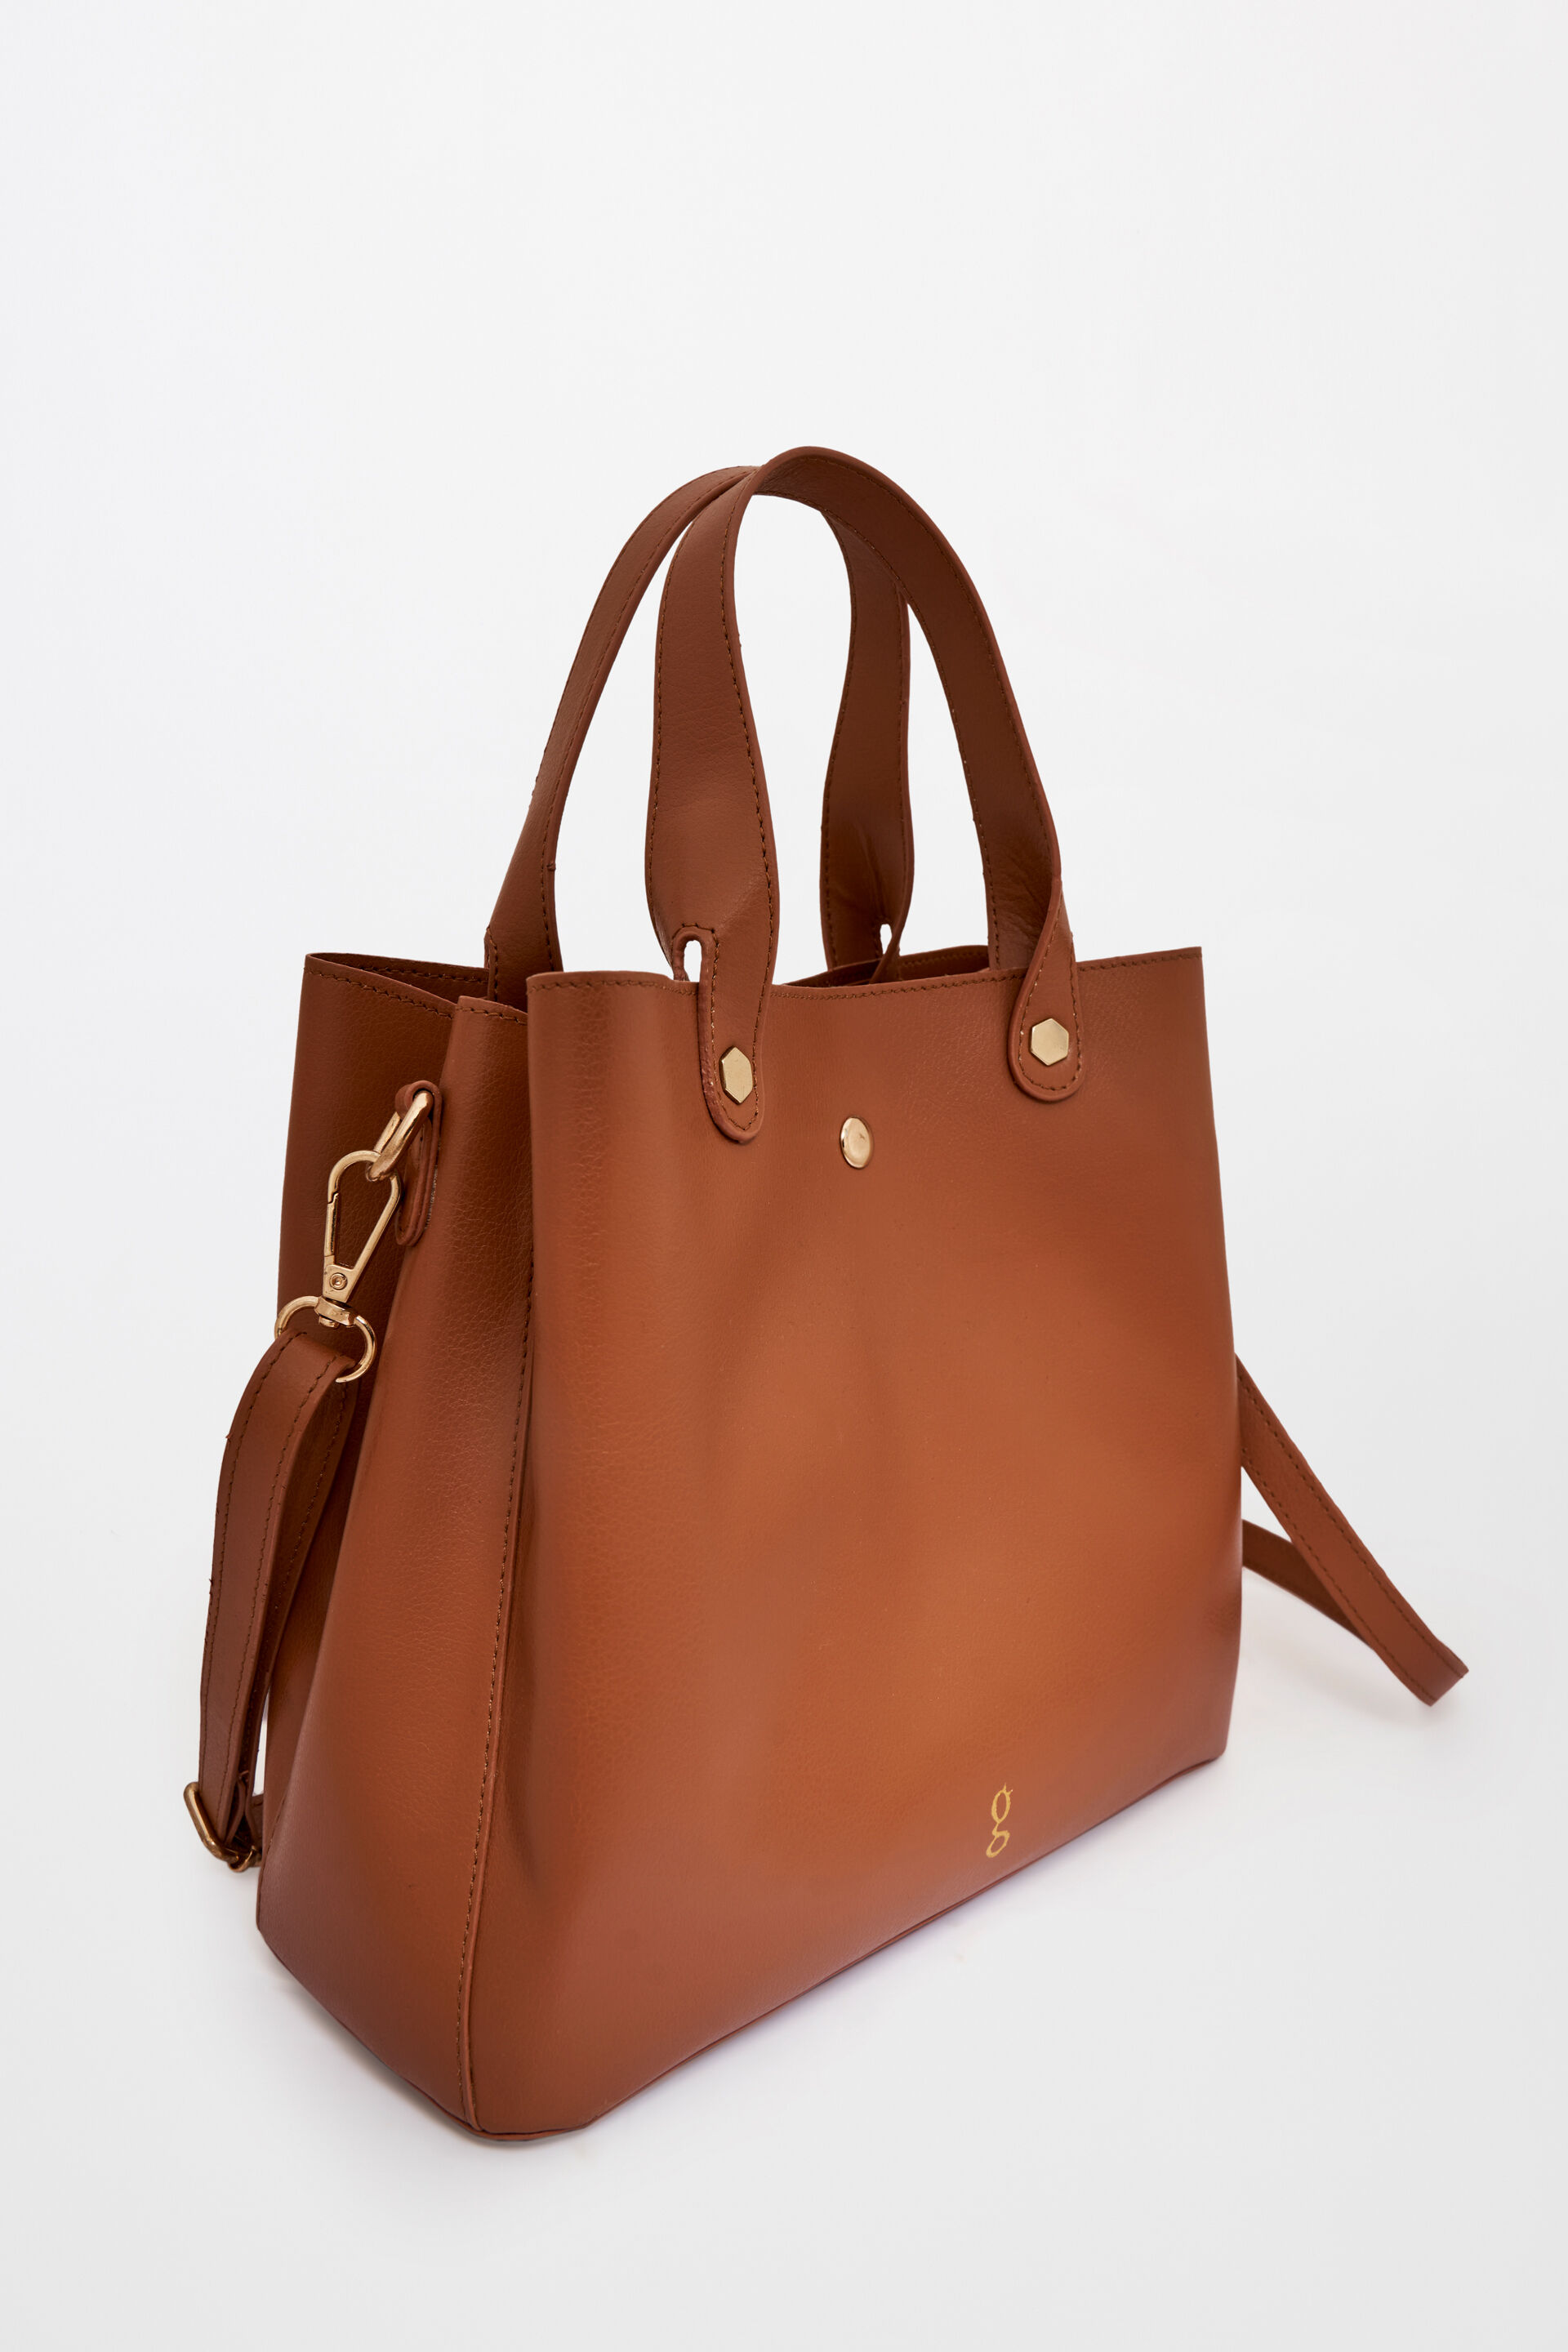 Handbag for Women | Leather Handbag Online | Get up to 60% off